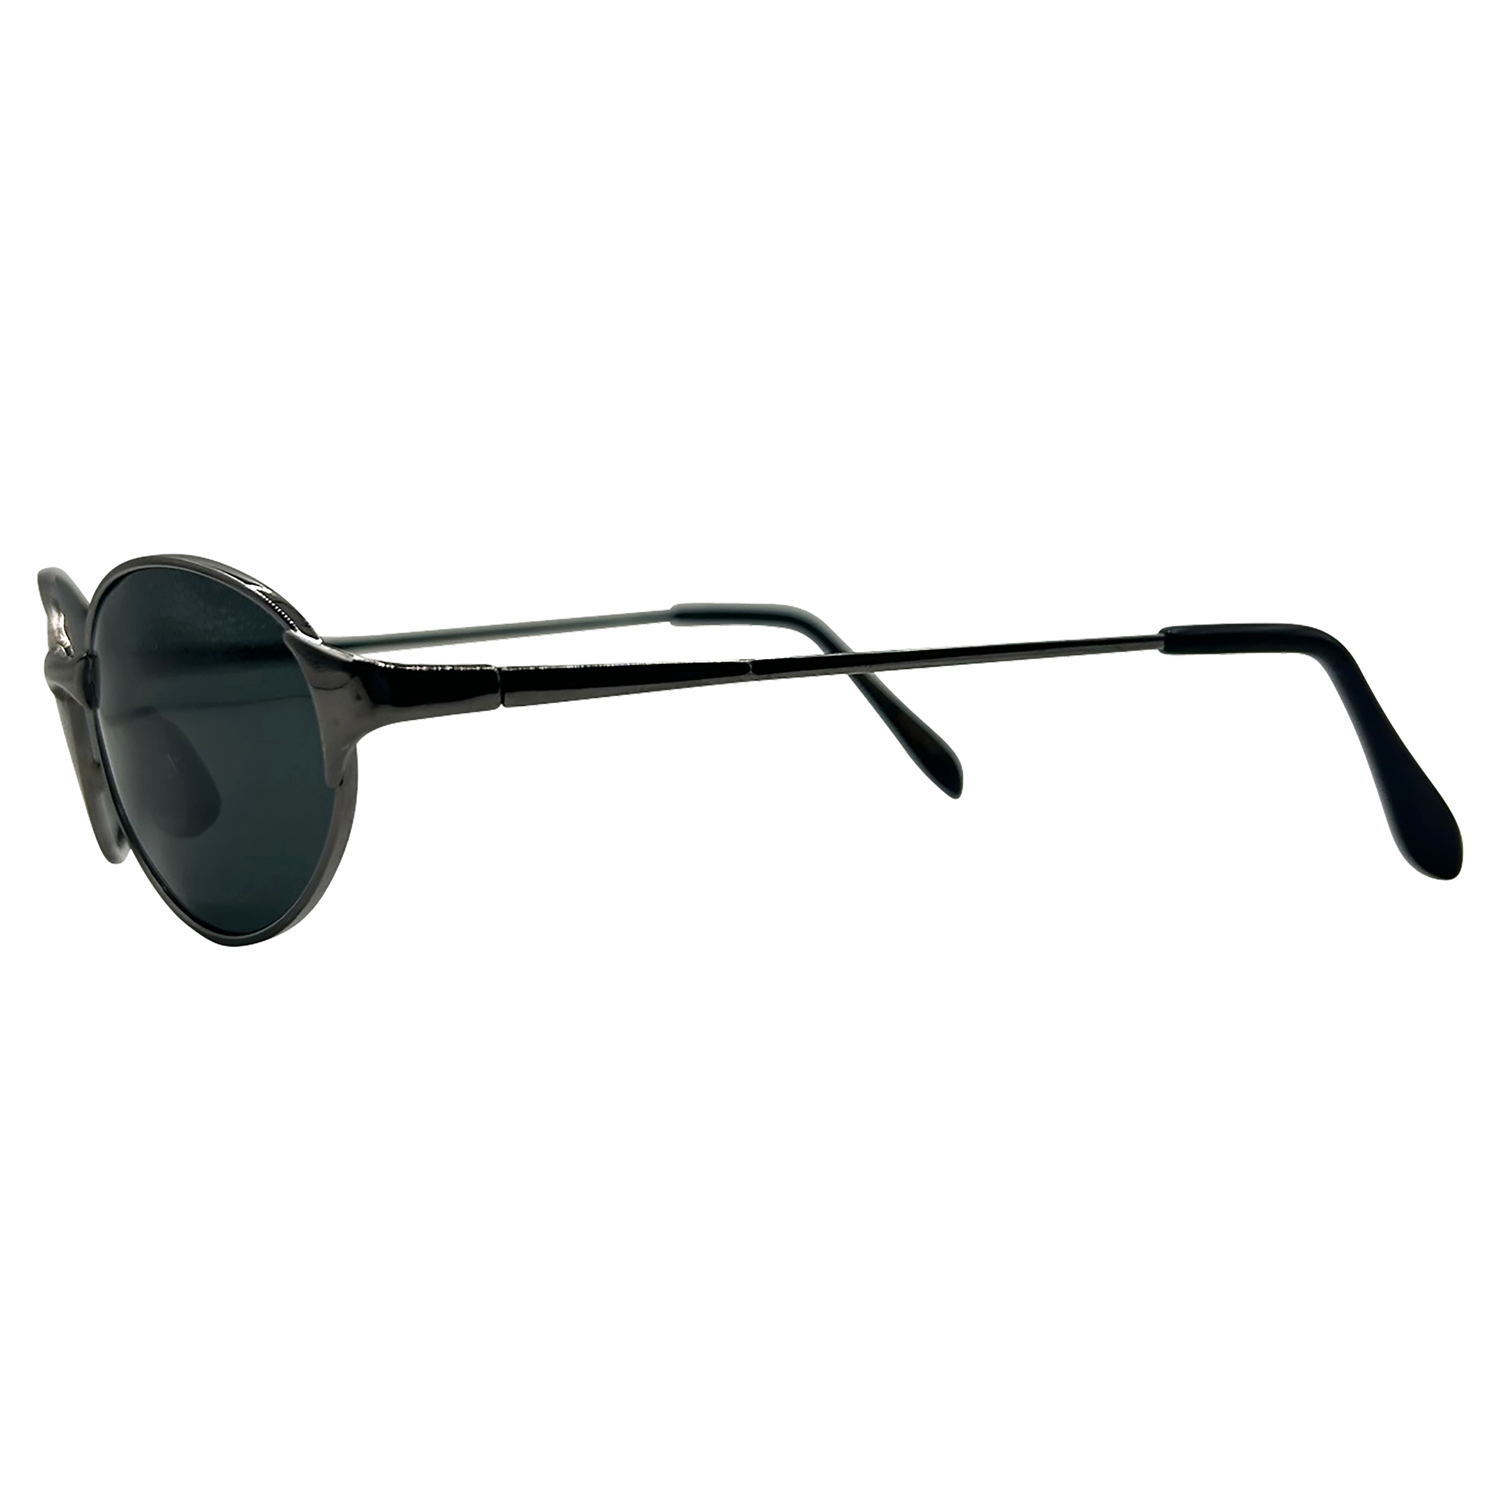 RESIST Oval Sunglasses